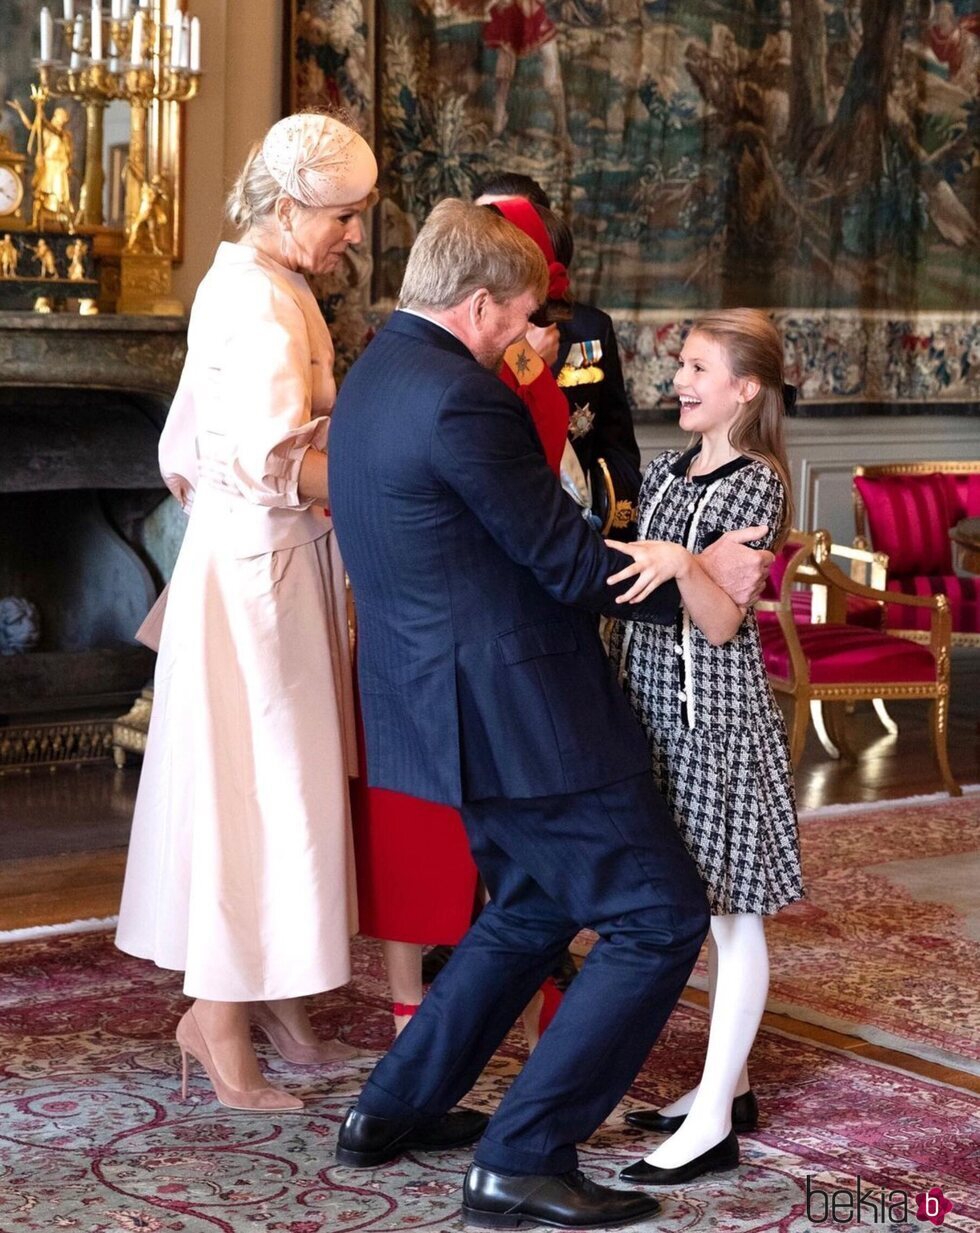 Estelle de Suecia saluda a Guillermo Alejandro de Holanda en presencia de Máxima de Holanda en el Palacio Real de Estocolmo